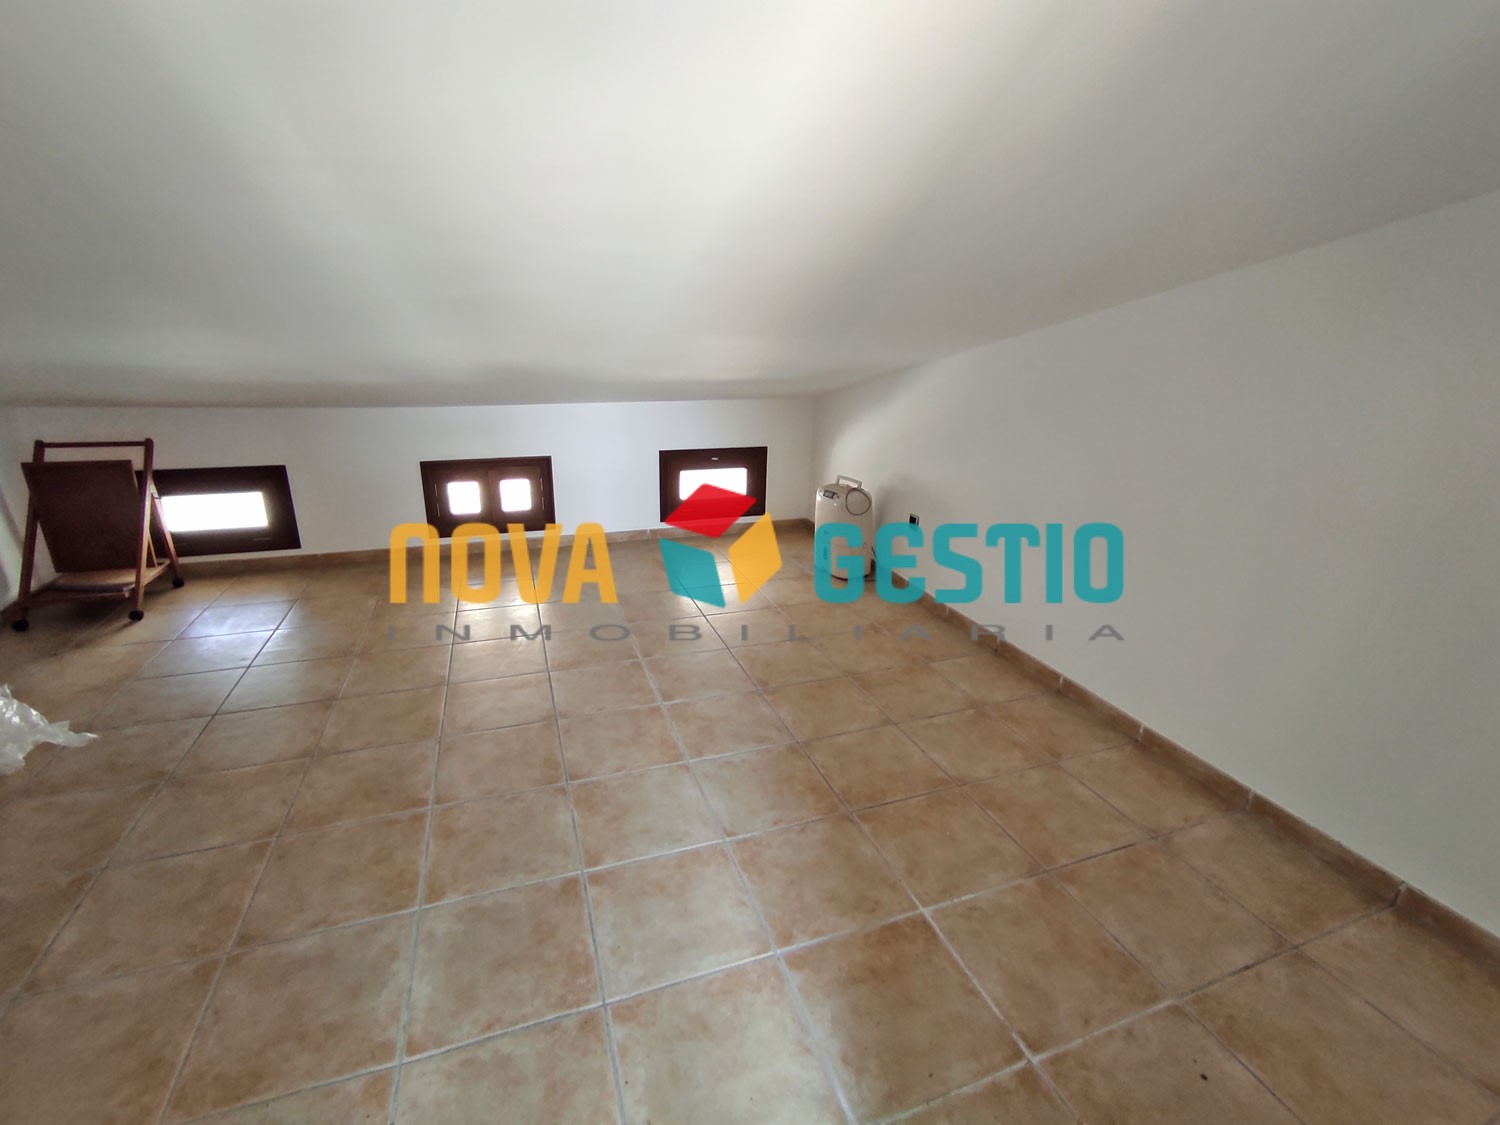 Casa duplex en alquiler en Porto Cristo : : CA986PC-AES